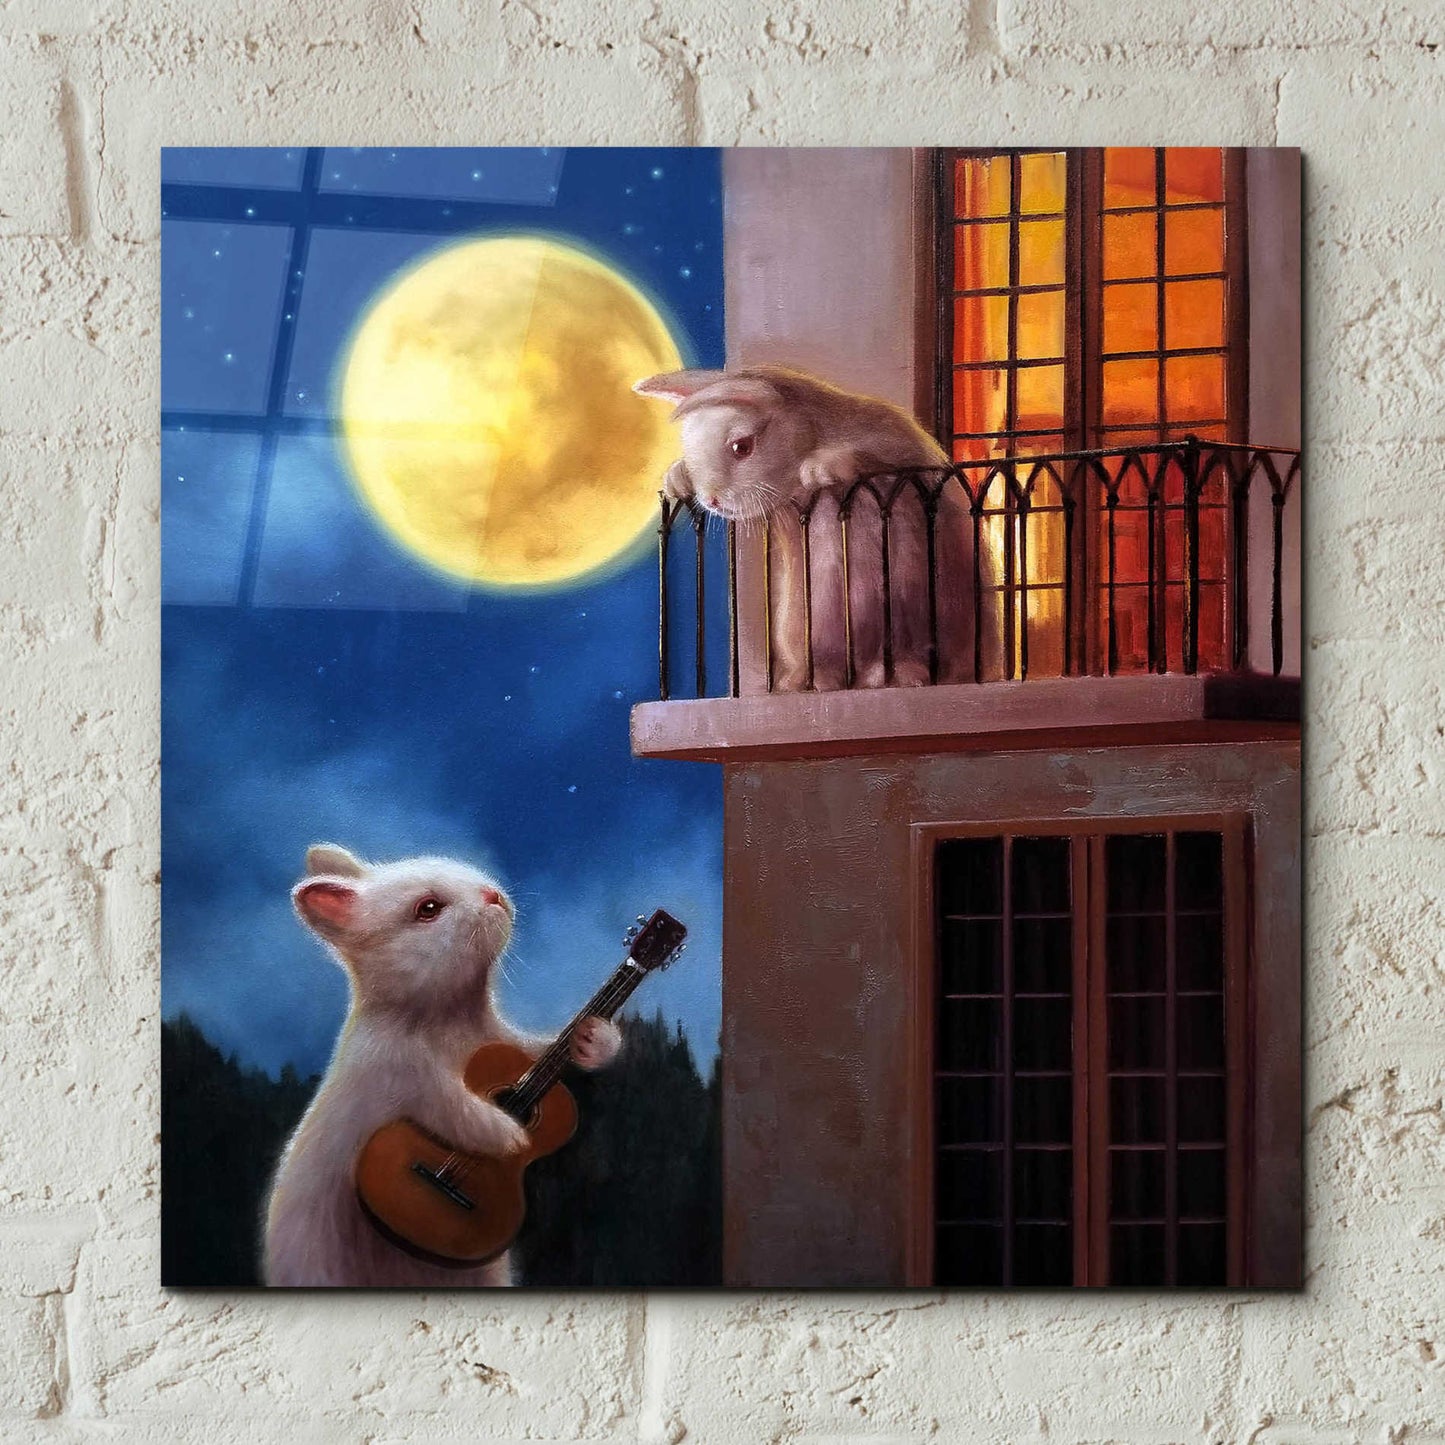 Epic Art 'Moonlight Serenade' by Lucia Heffernan, Acrylic Glass Wall Art,12x12